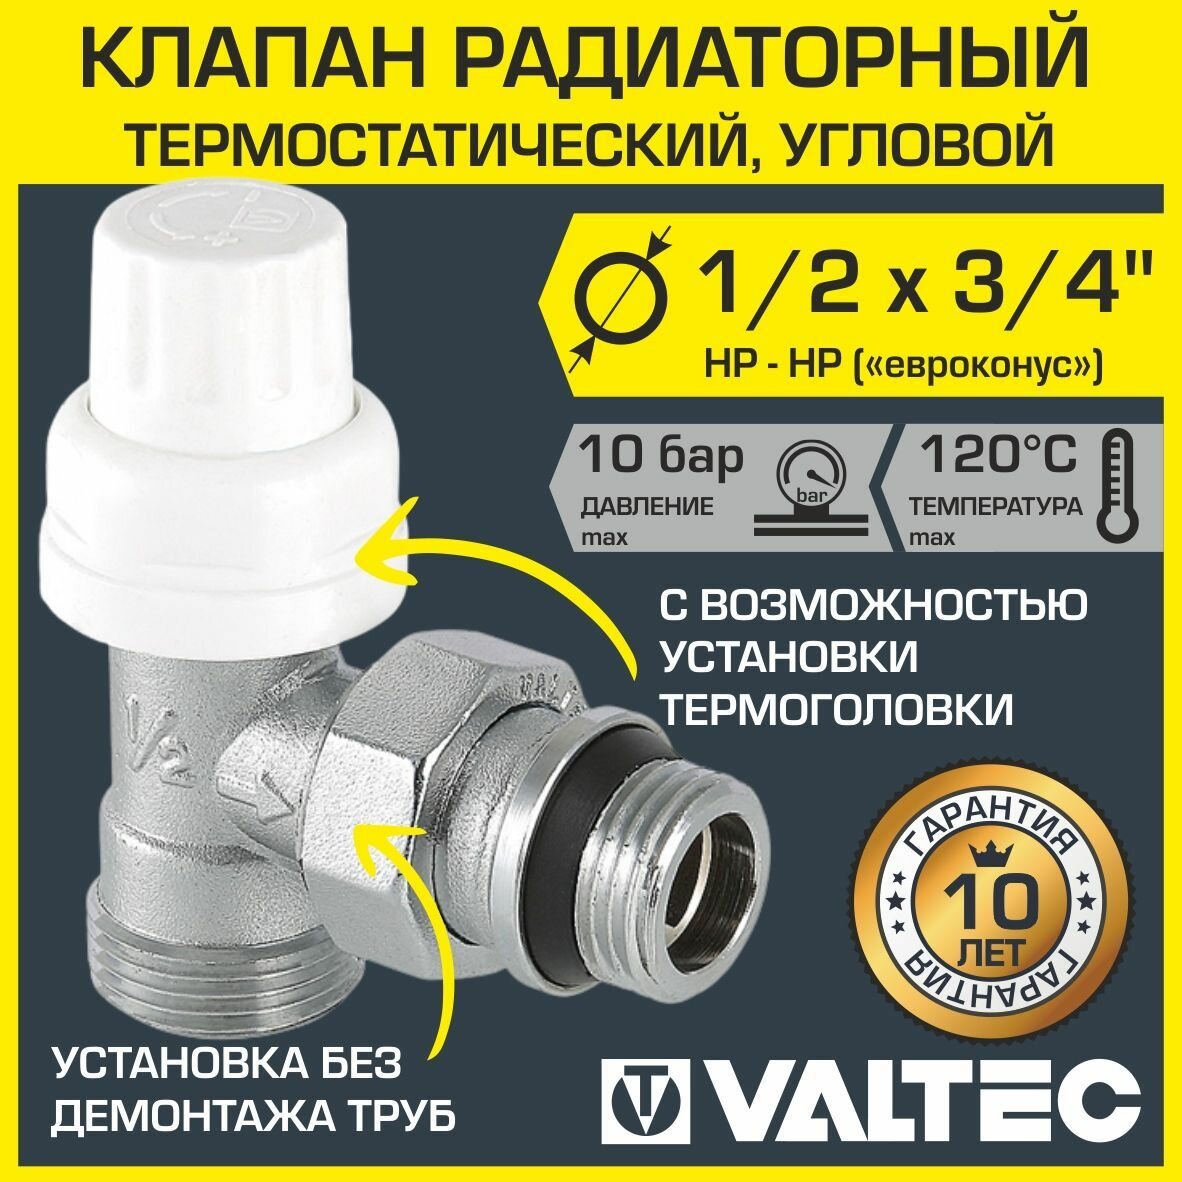 Термостатический клапан для радиатора Valtec 1/2" x 3/4" ("евроконус") угловой арт. VT.031. NER.04